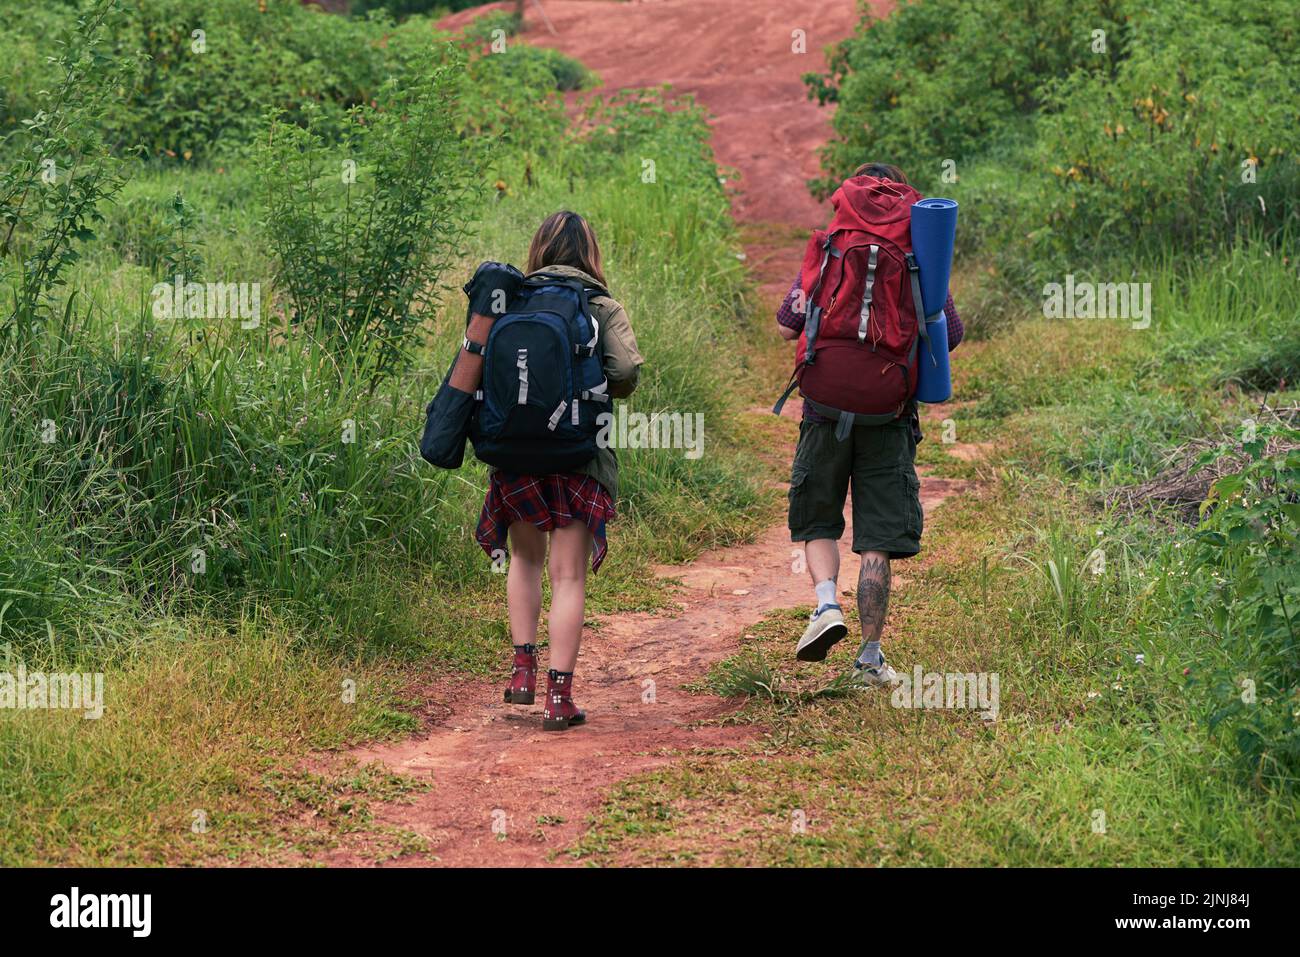 Rückansicht von jungen Wanderern mit Rucksäcken, die Spaß haben, während sie auf dem Pfad in buschiger Gegend spazieren gehen Stockfoto